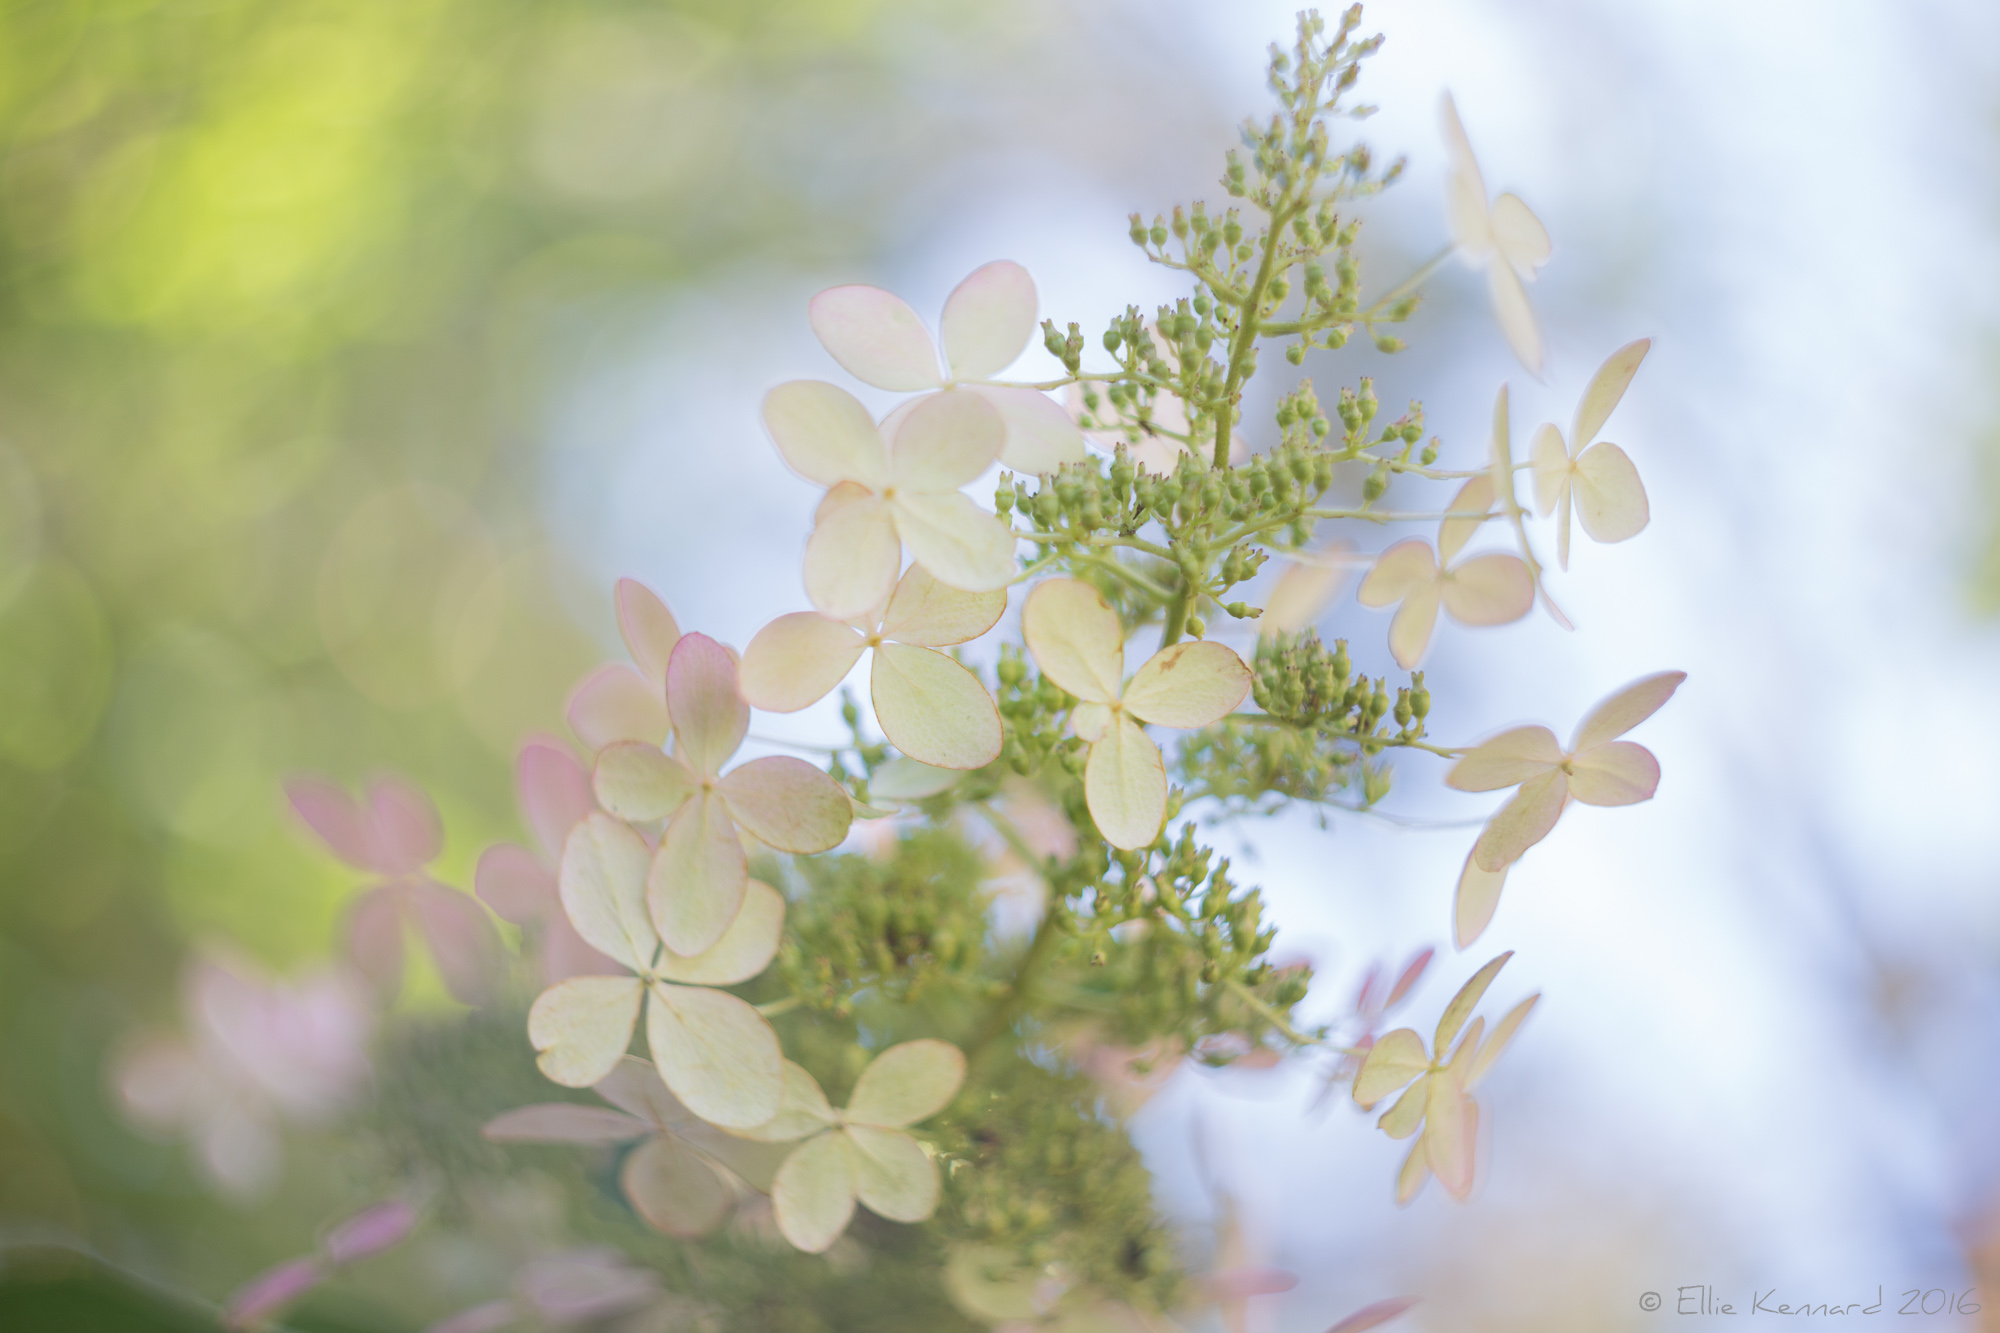 Autumn Hydrangea cream flowers - Ellie Kennard 2016